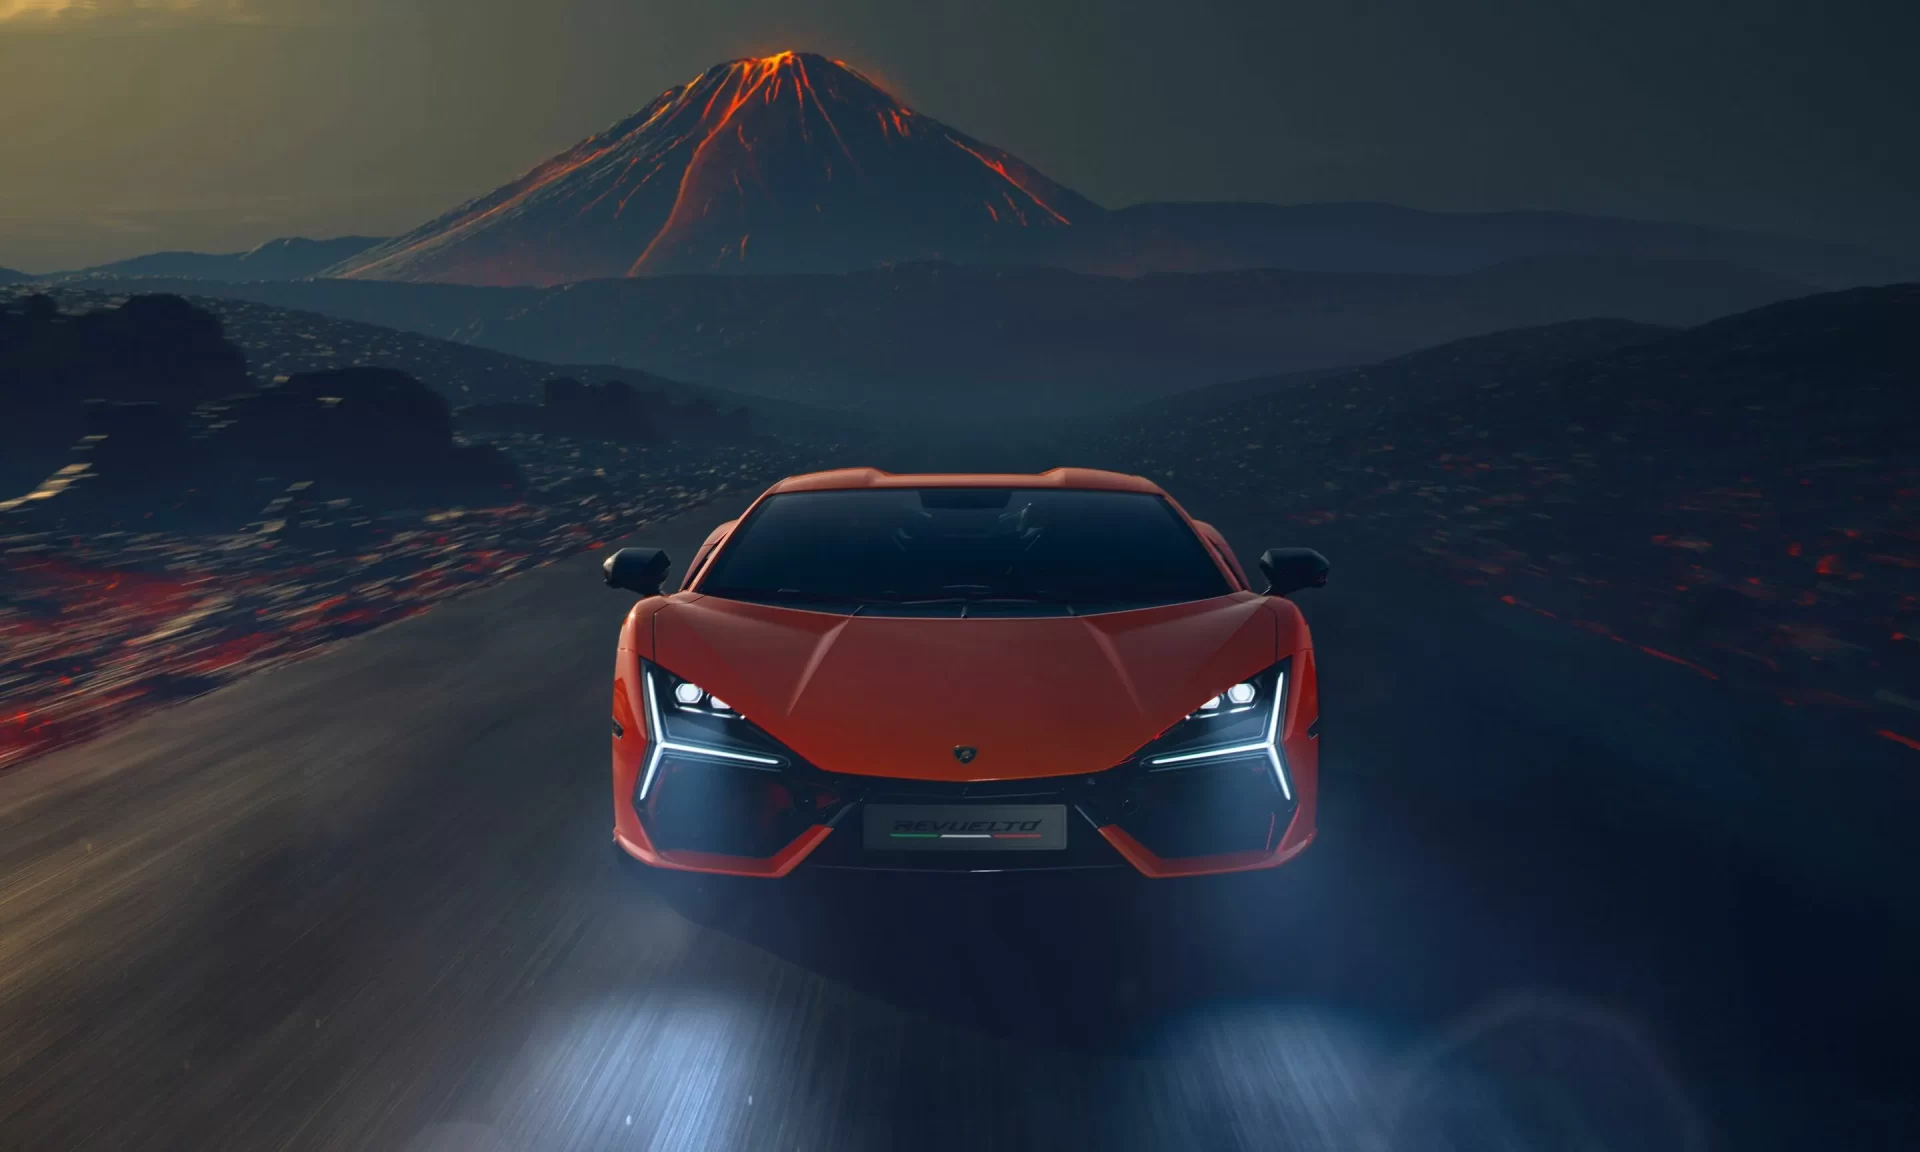 Lamborghini's Telemetry